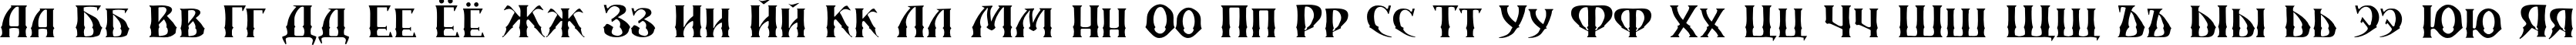 Пример написания русского алфавита шрифтом SibTrade TYGRA